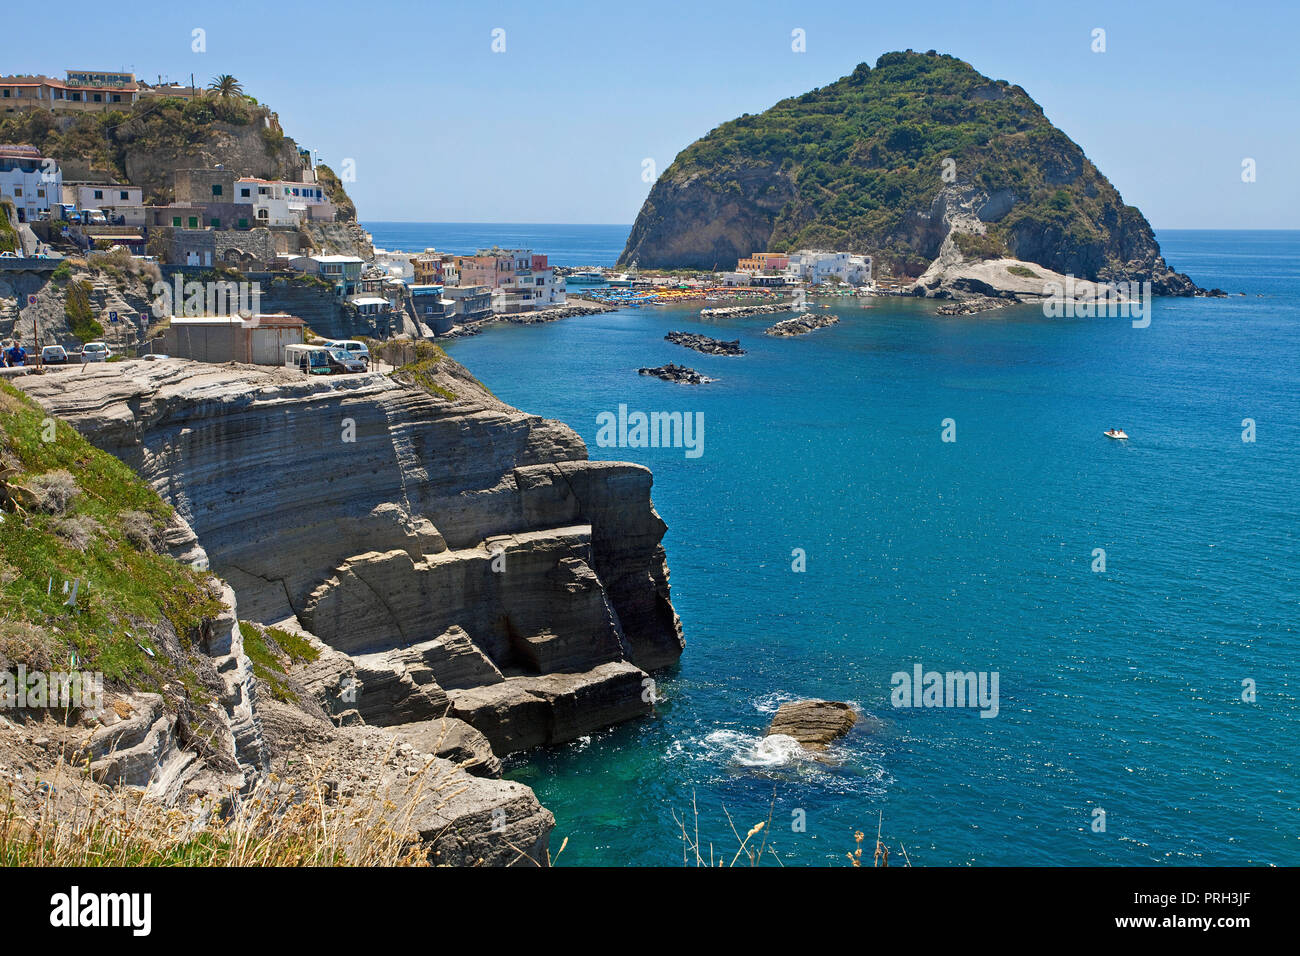 Malerische Küste von Sant'Angelo, Insel Ischia, Golf von Neapel, Italien  Stockfotografie - Alamy